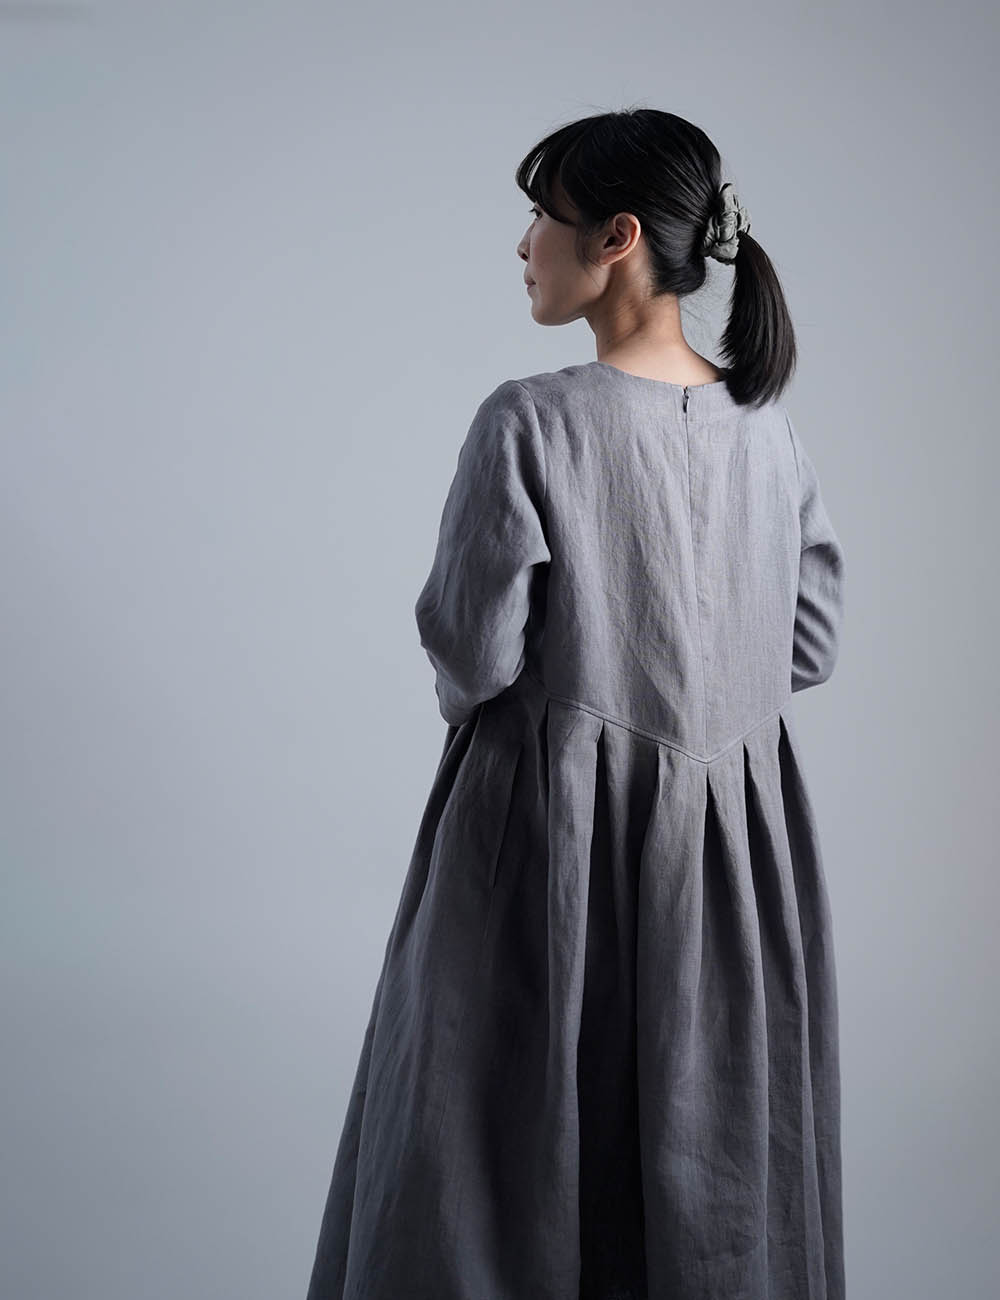 【wafu】Linen Dress 鍵盤タックワンピース 中厚地 / スチールグレー a013s-stg2